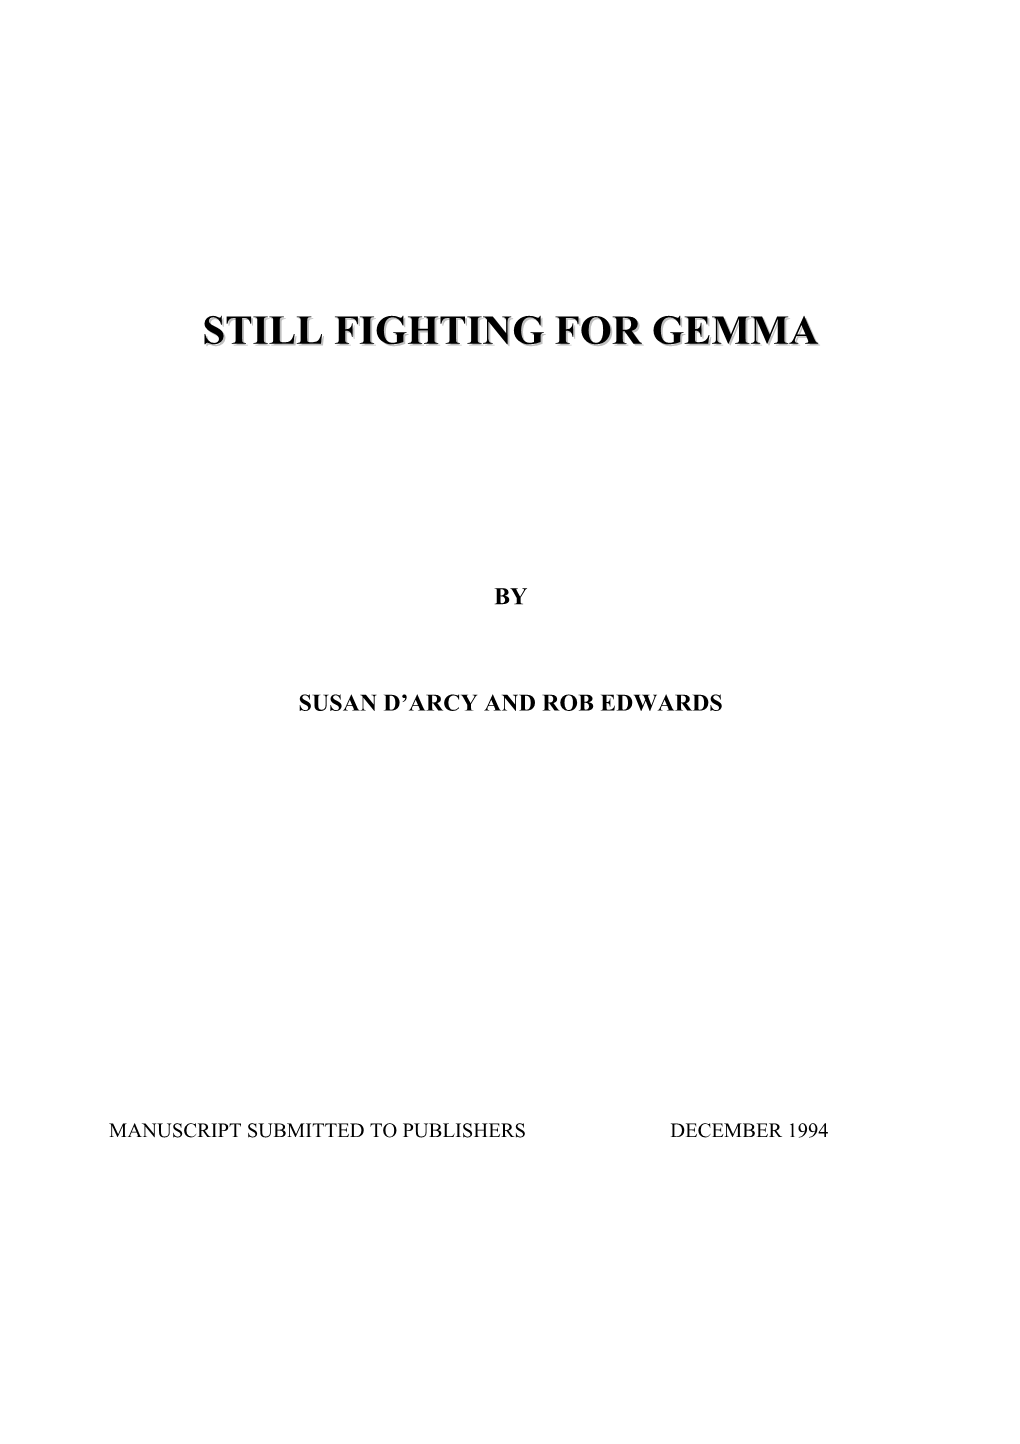 Still Fighting for Gemma